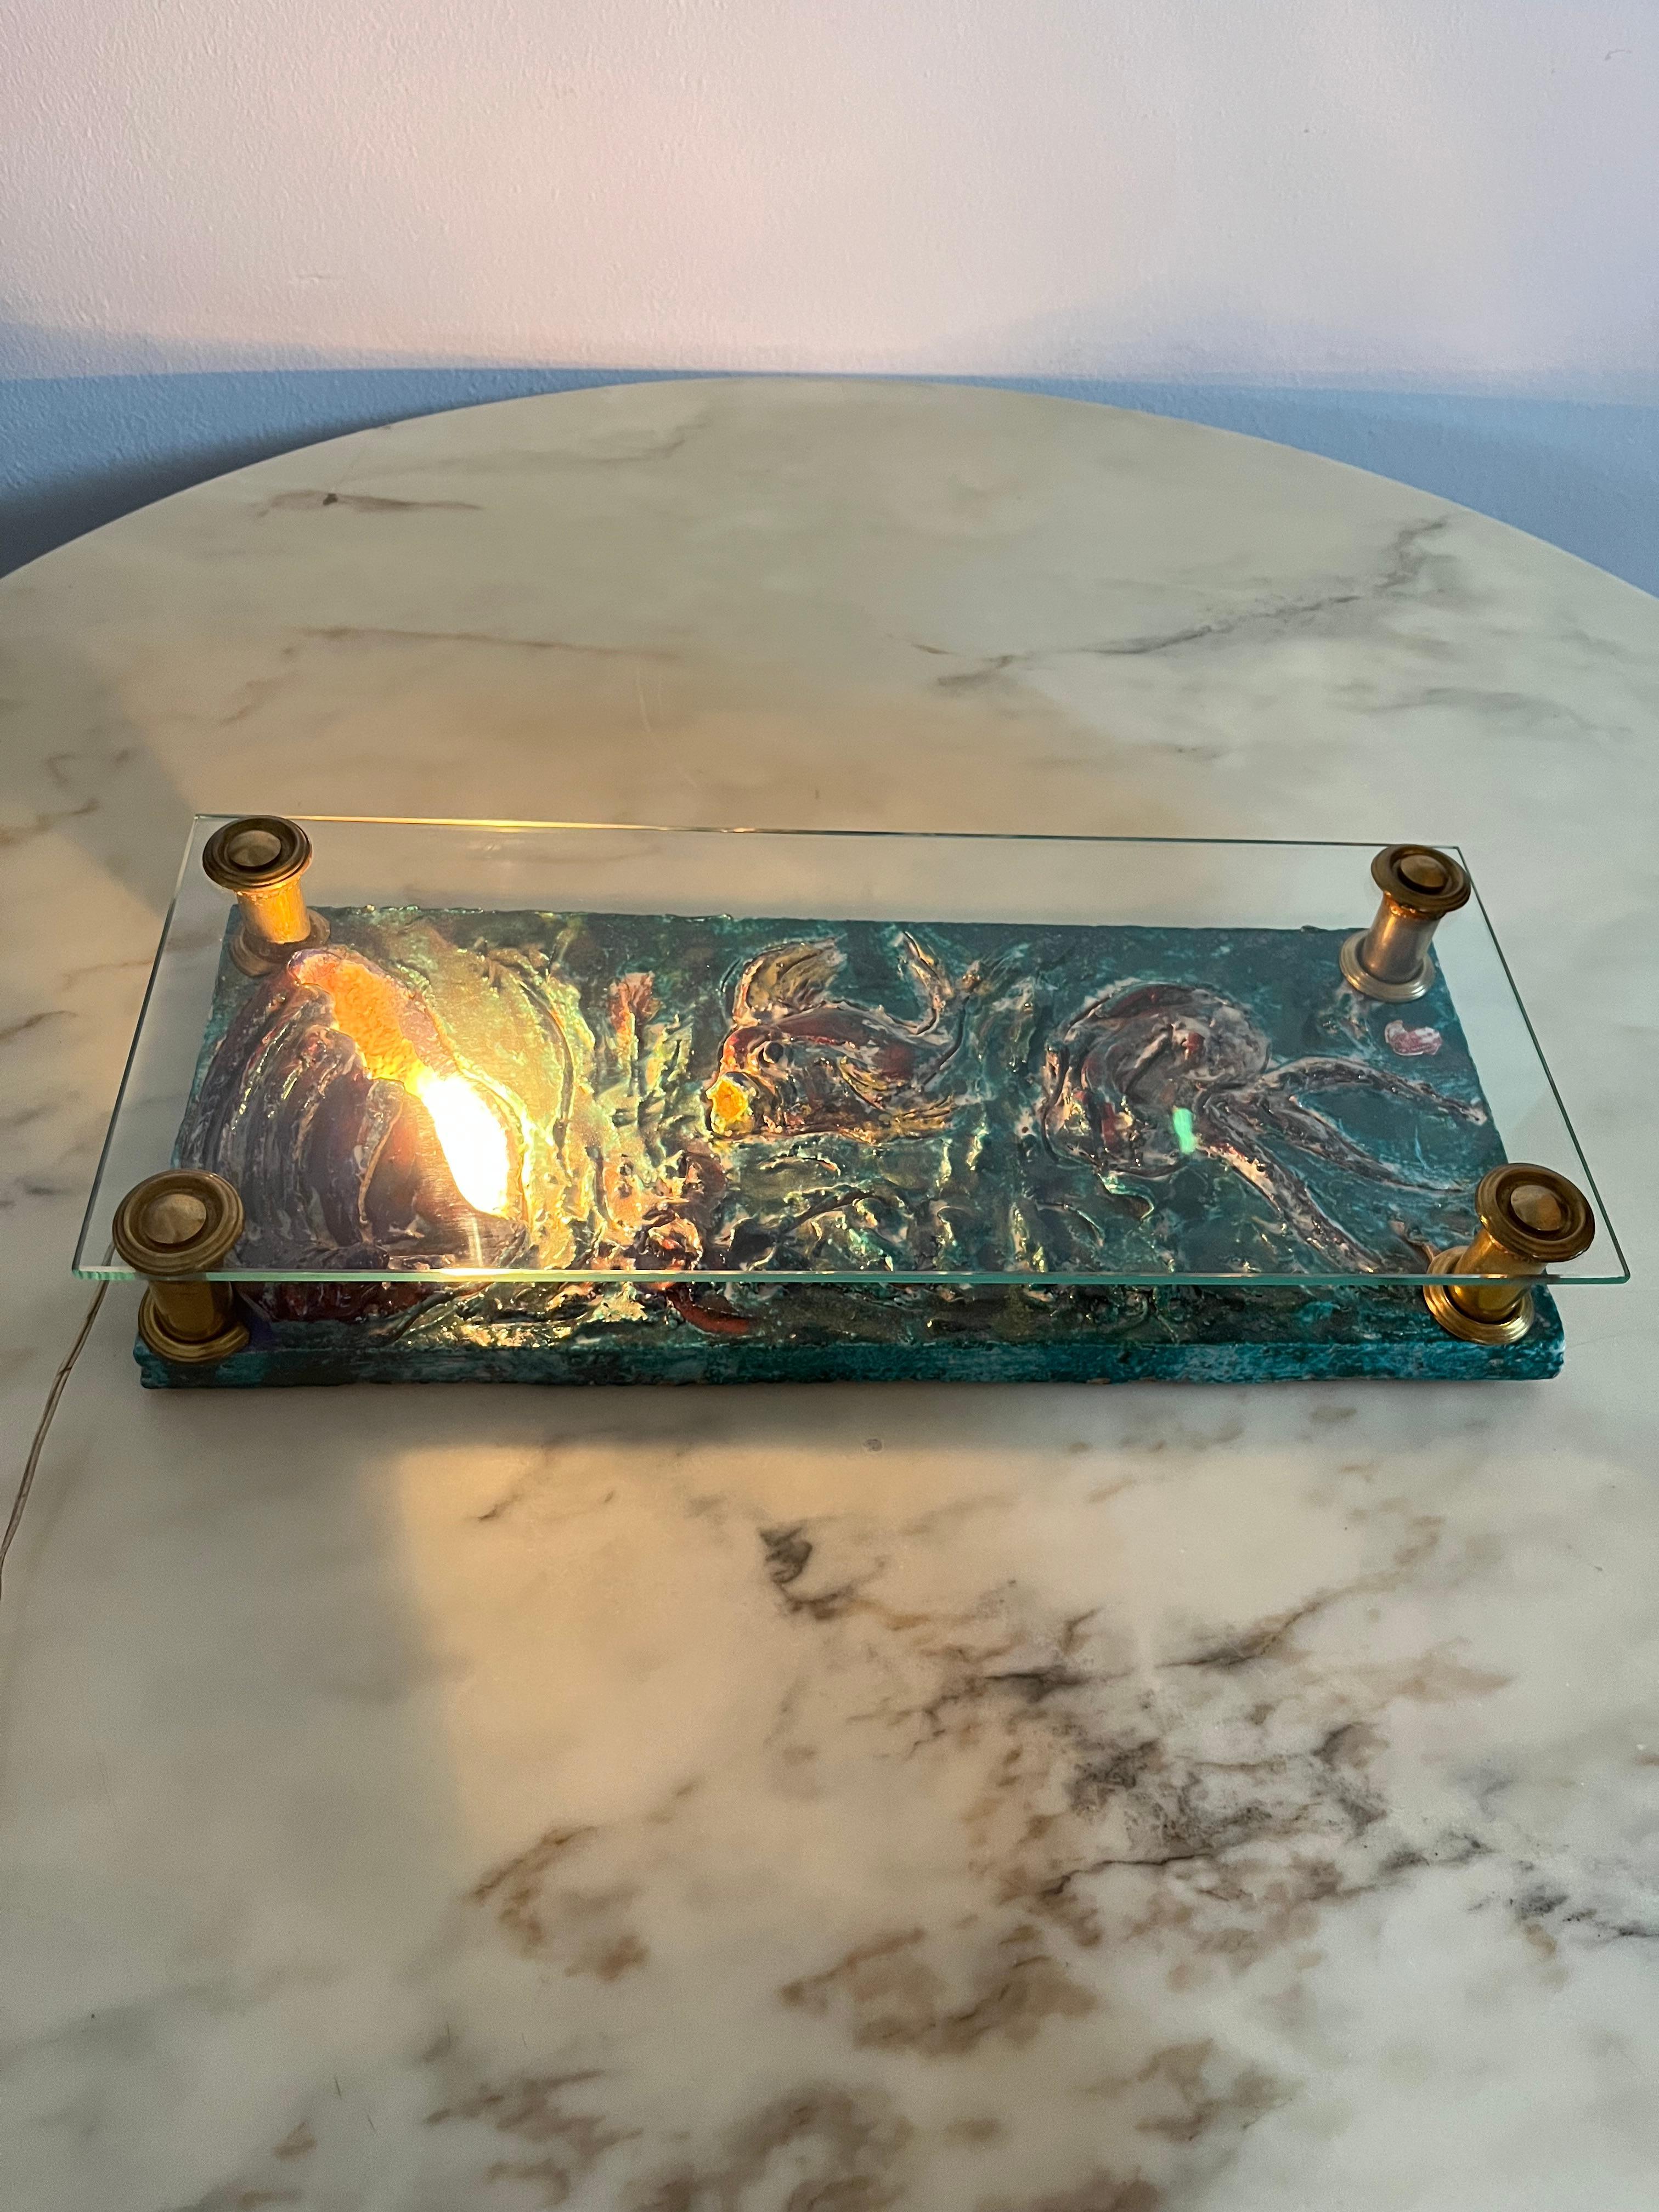 Lampe de table italienne en terre cuite émaillée, années 1950
Représentation d'un paysage marin avec des poissons et des coquillages.
Plateau en verre et supports en laiton. Pièce unique.
Petits signes de temps et d'utilisation, comme en témoignent